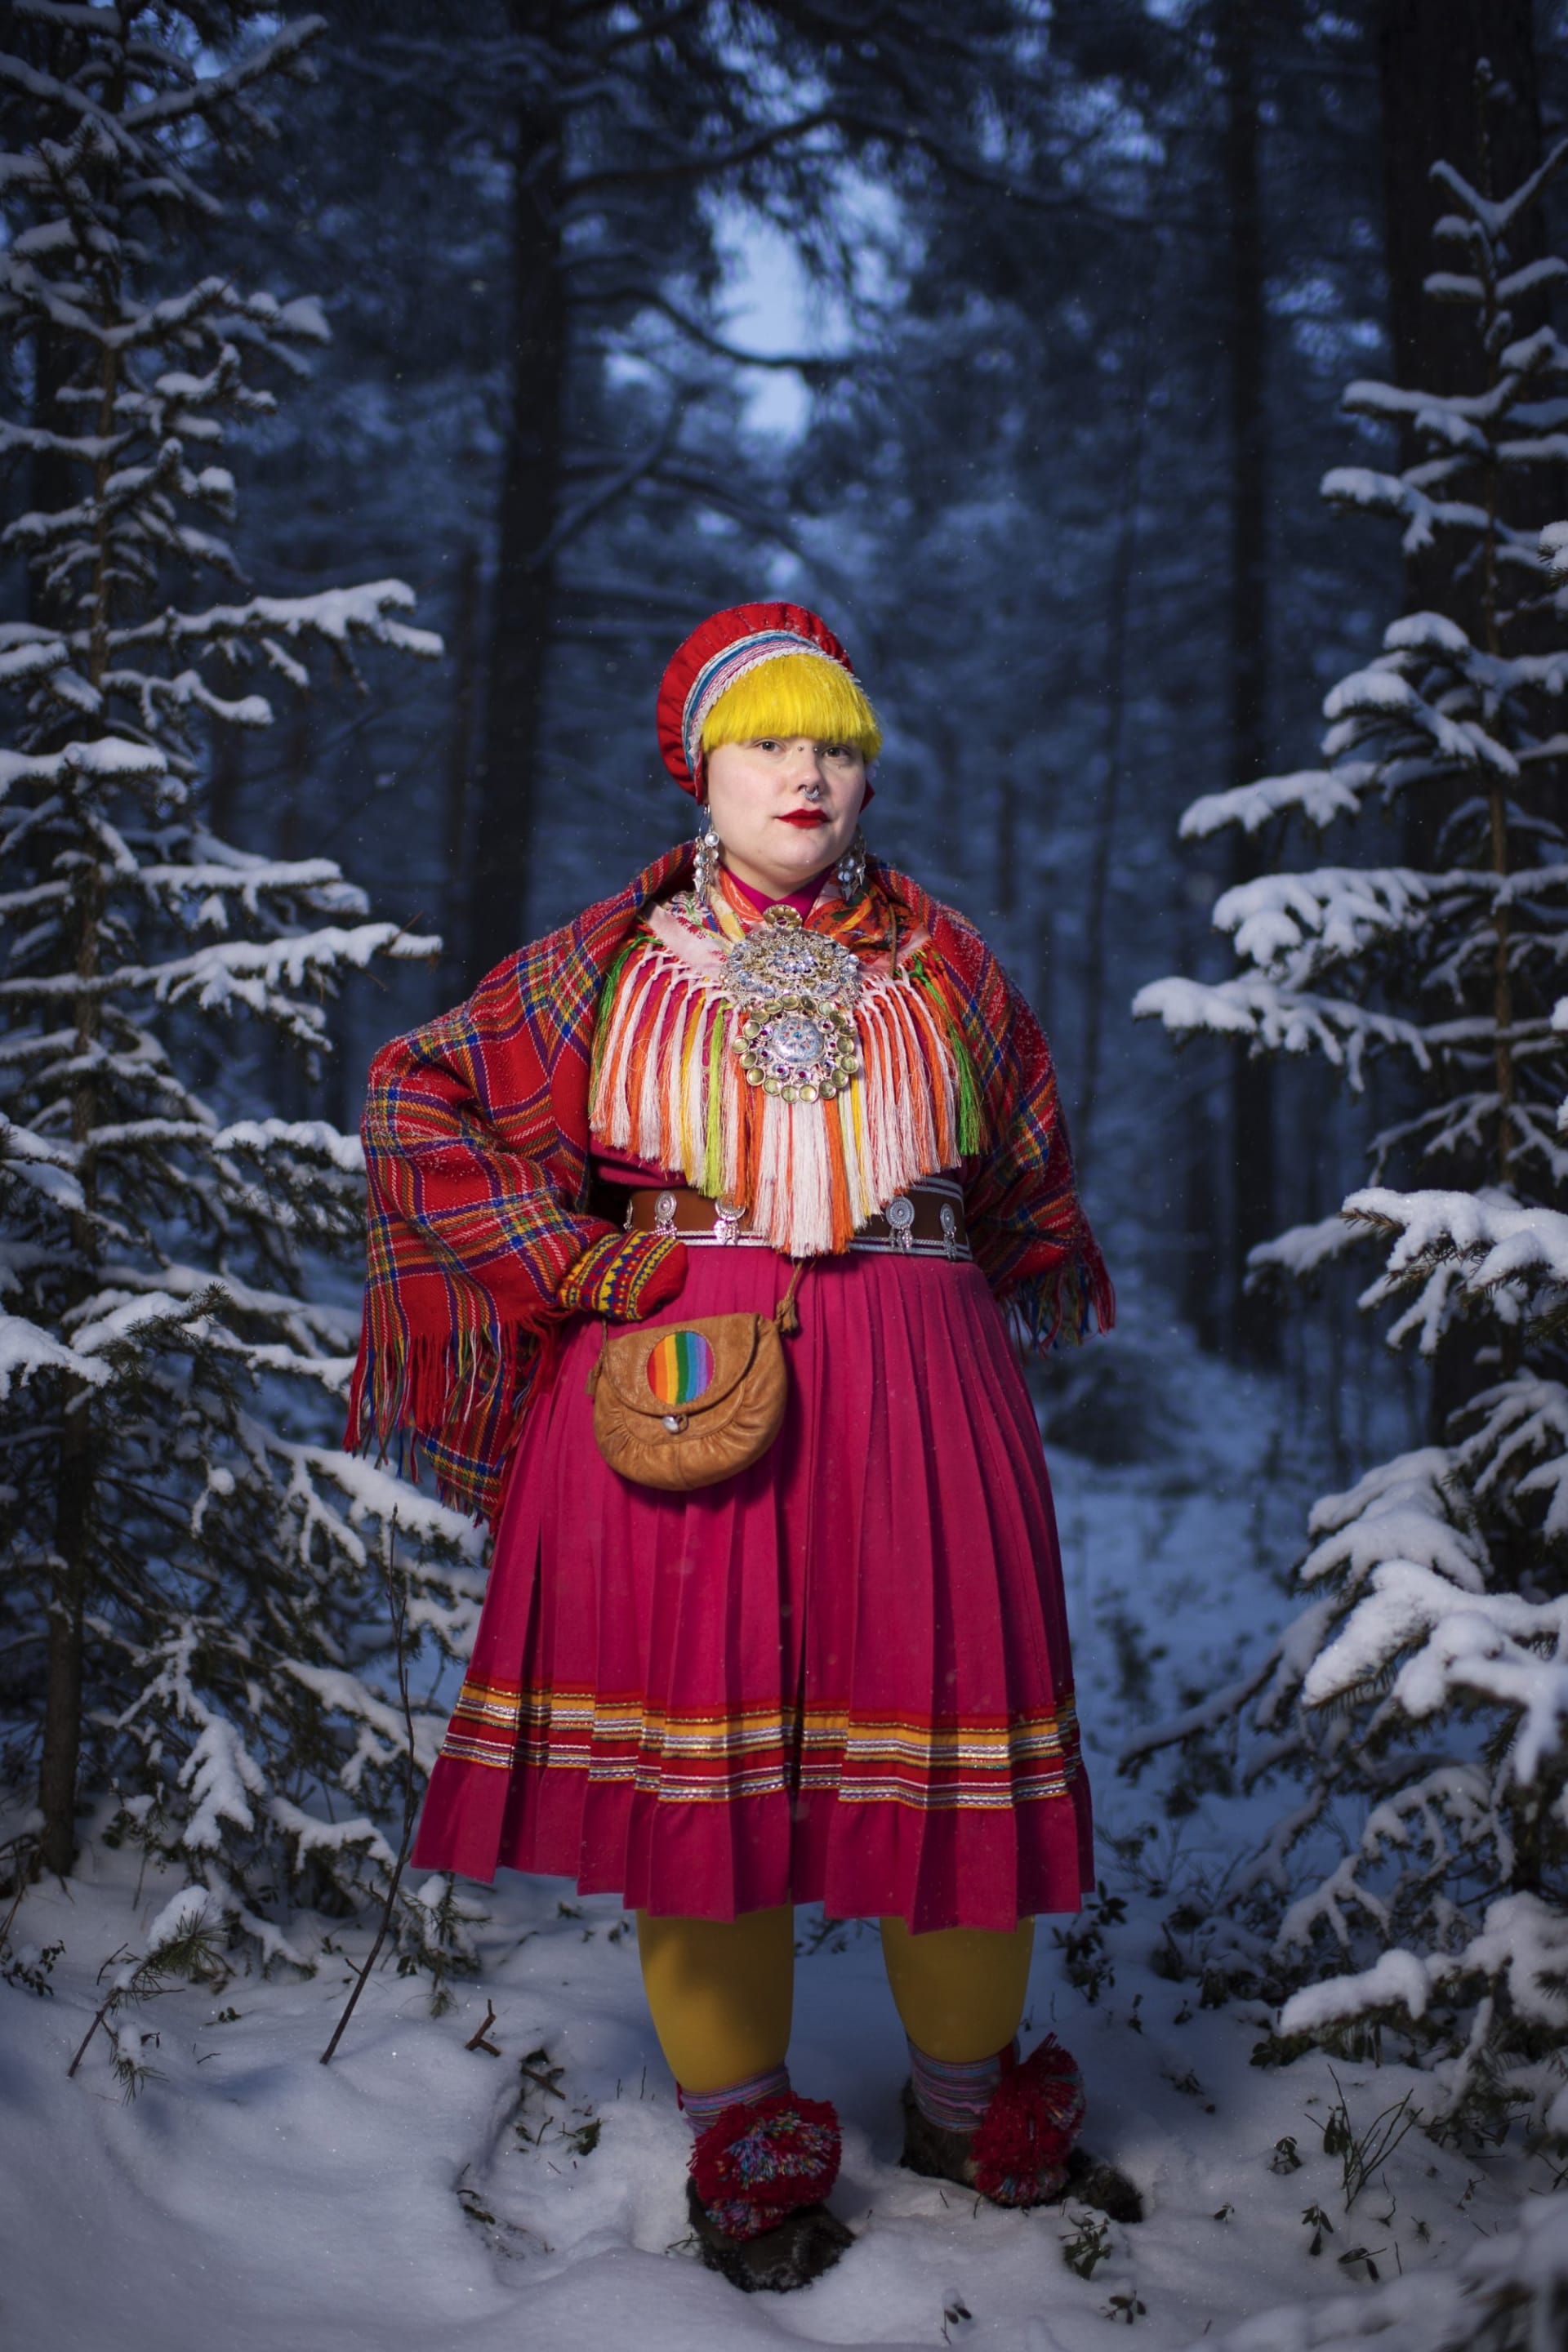 Studentka Merethe Kuhmunen pózuje v tradičním oděvu zvaném gákti. 1